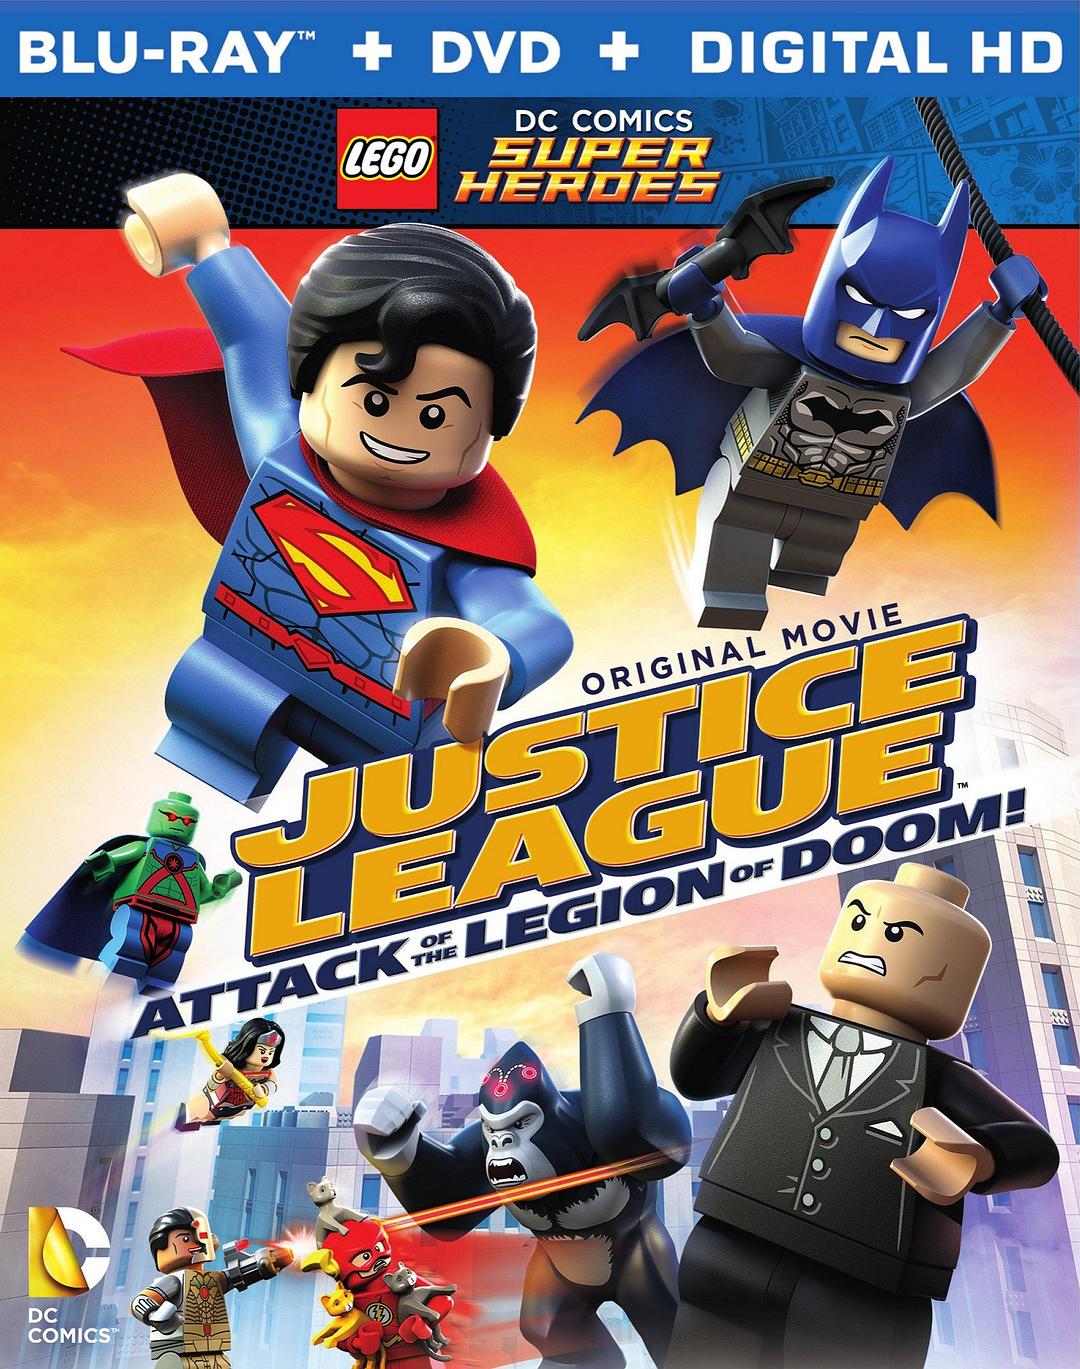 乐高DC超级豪杰:正义同盟之末日军团的打击/乐高正义同盟:扑灭军团来袭 LEGO.DC.Comics.Super.Heroes.Justice.League.Attack.of.the.Legion.of.Doom.2015.1080p.BluRay.x264-ROVERS 4.37GB-1.png